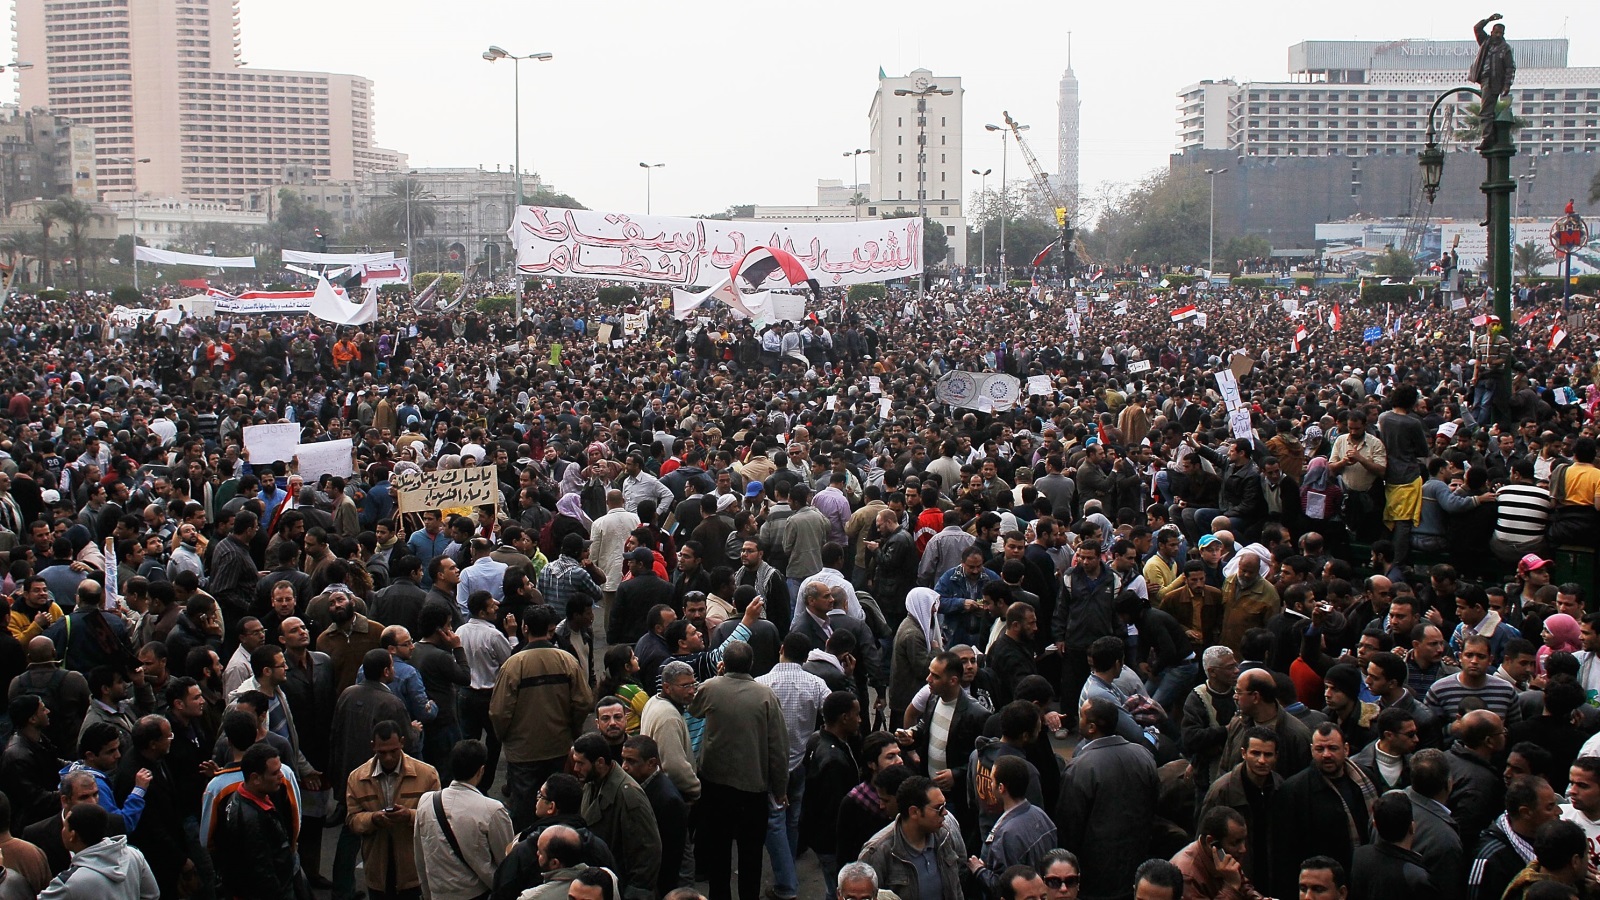  شبح ثورة 25 يناير يطارد النظام مع اقتراب ذكراها الثامنة (غيتي-أرشيف)